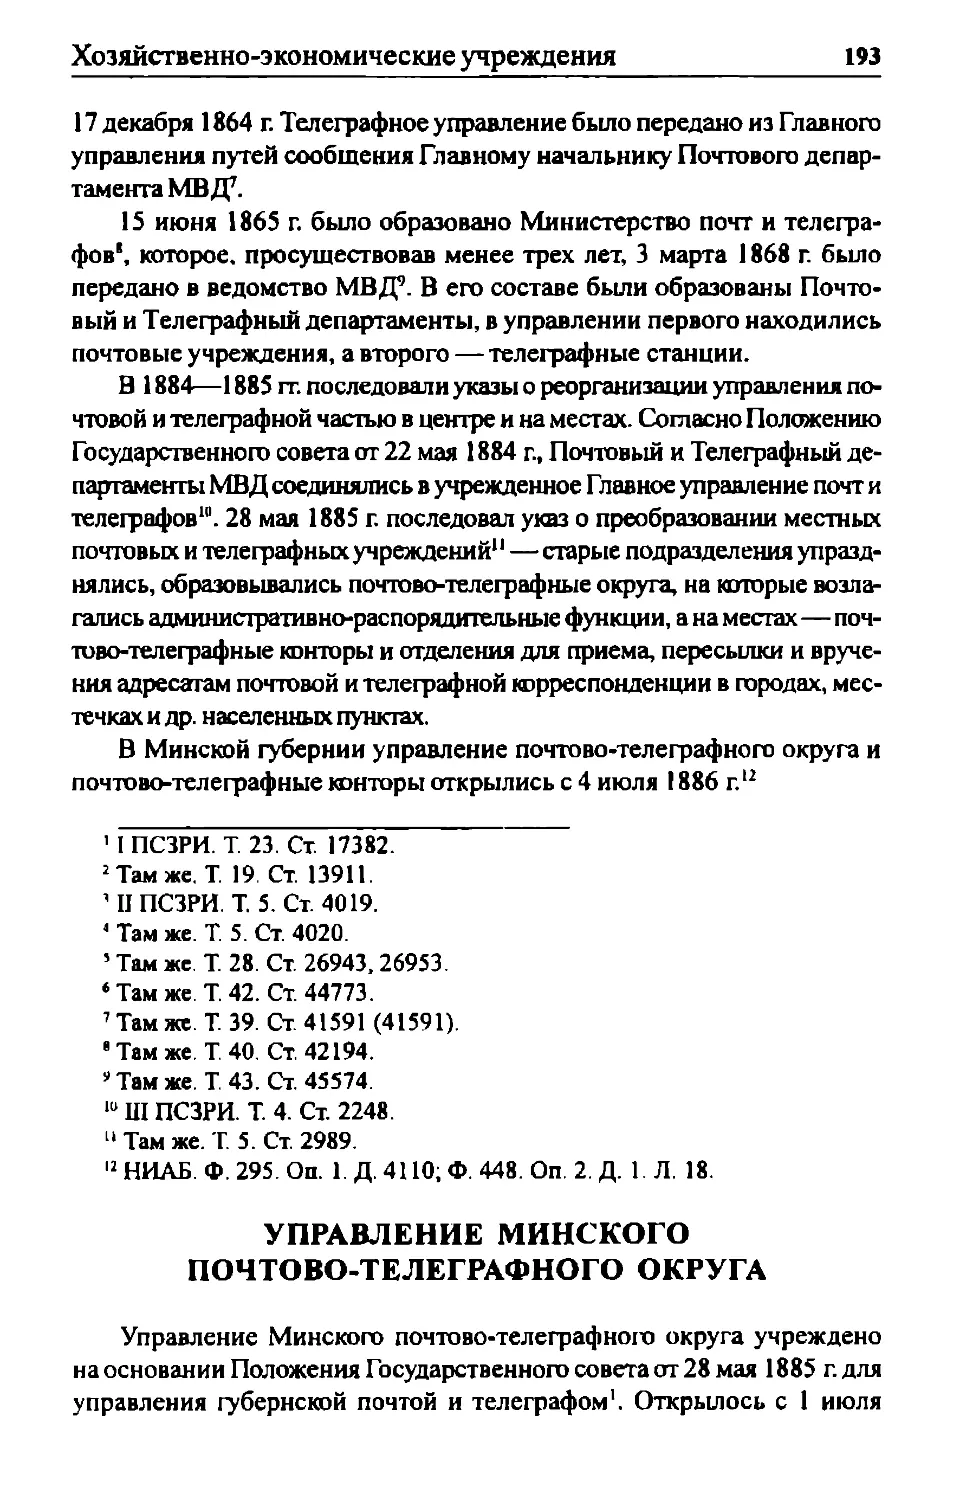 Управление Минского почтово-телеграфного округа